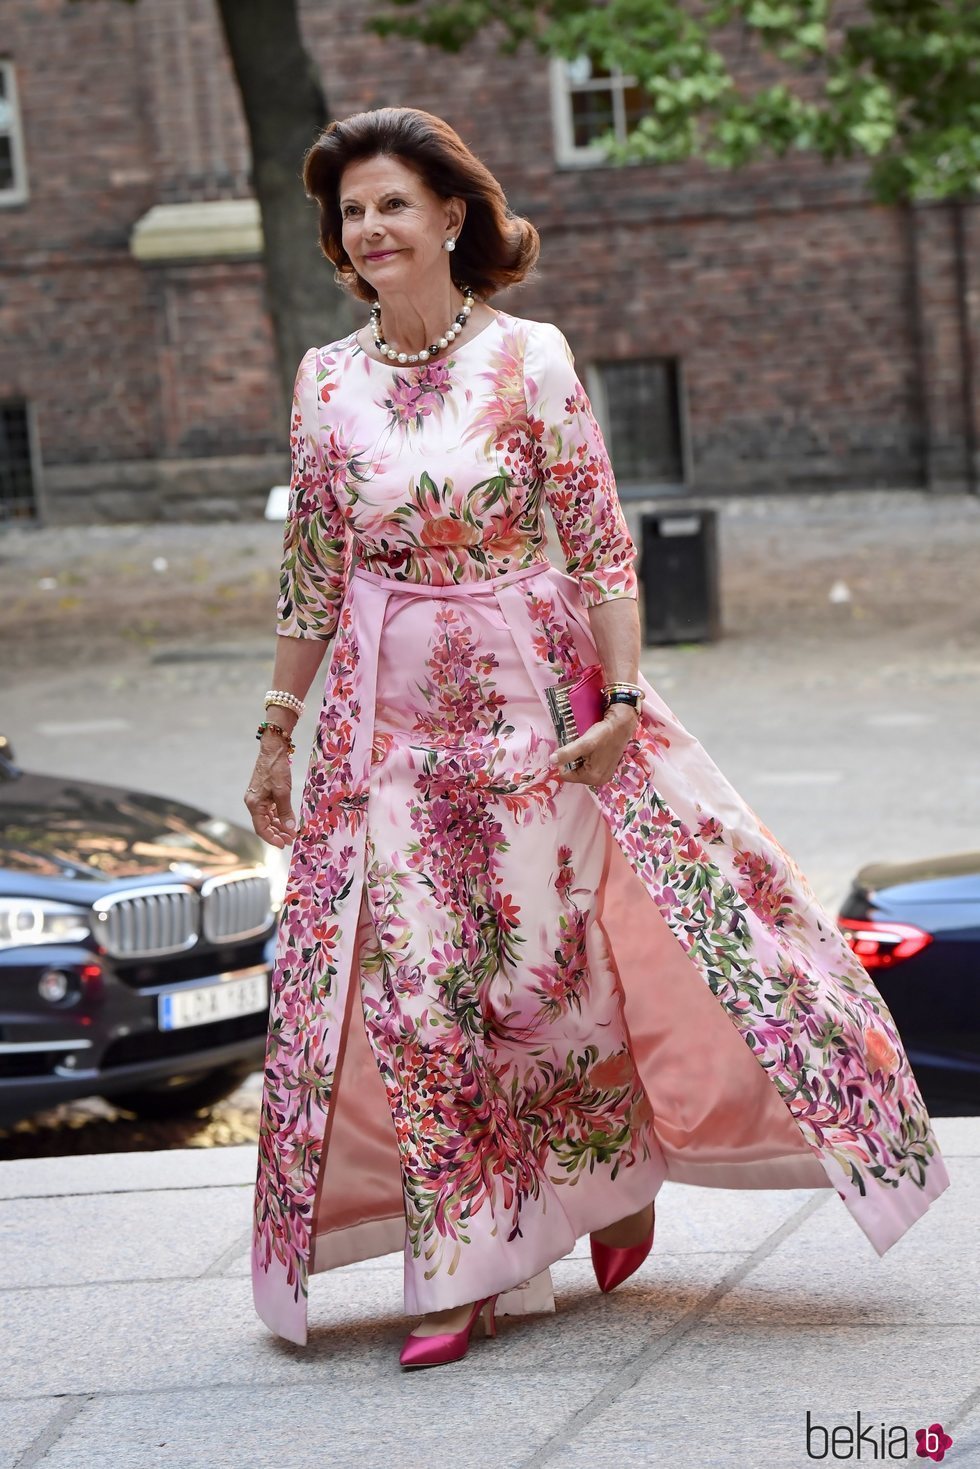 La Reina Silvia de Suecia con un vestido satinado de flores en el City Hall de Estocolmo